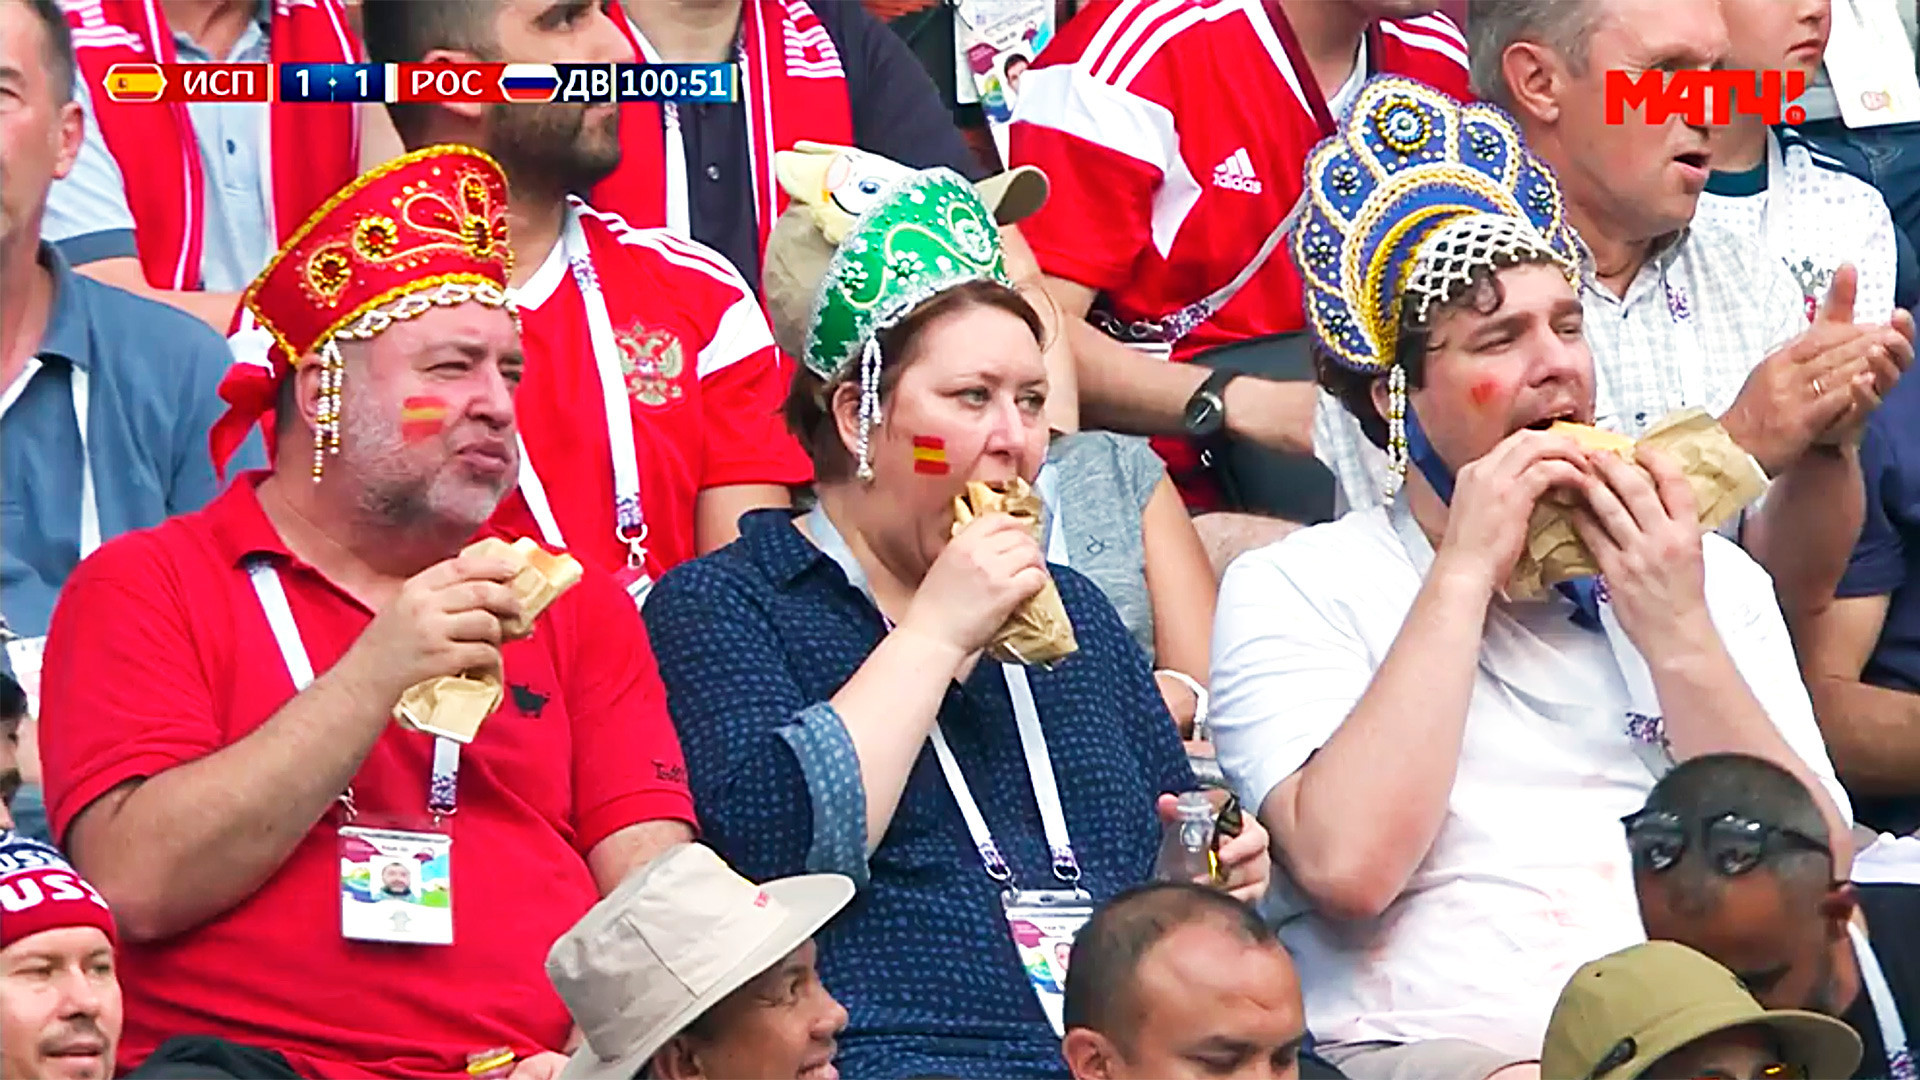 Russian fans in kokoshniks, Russia's national hats (well, sort of).